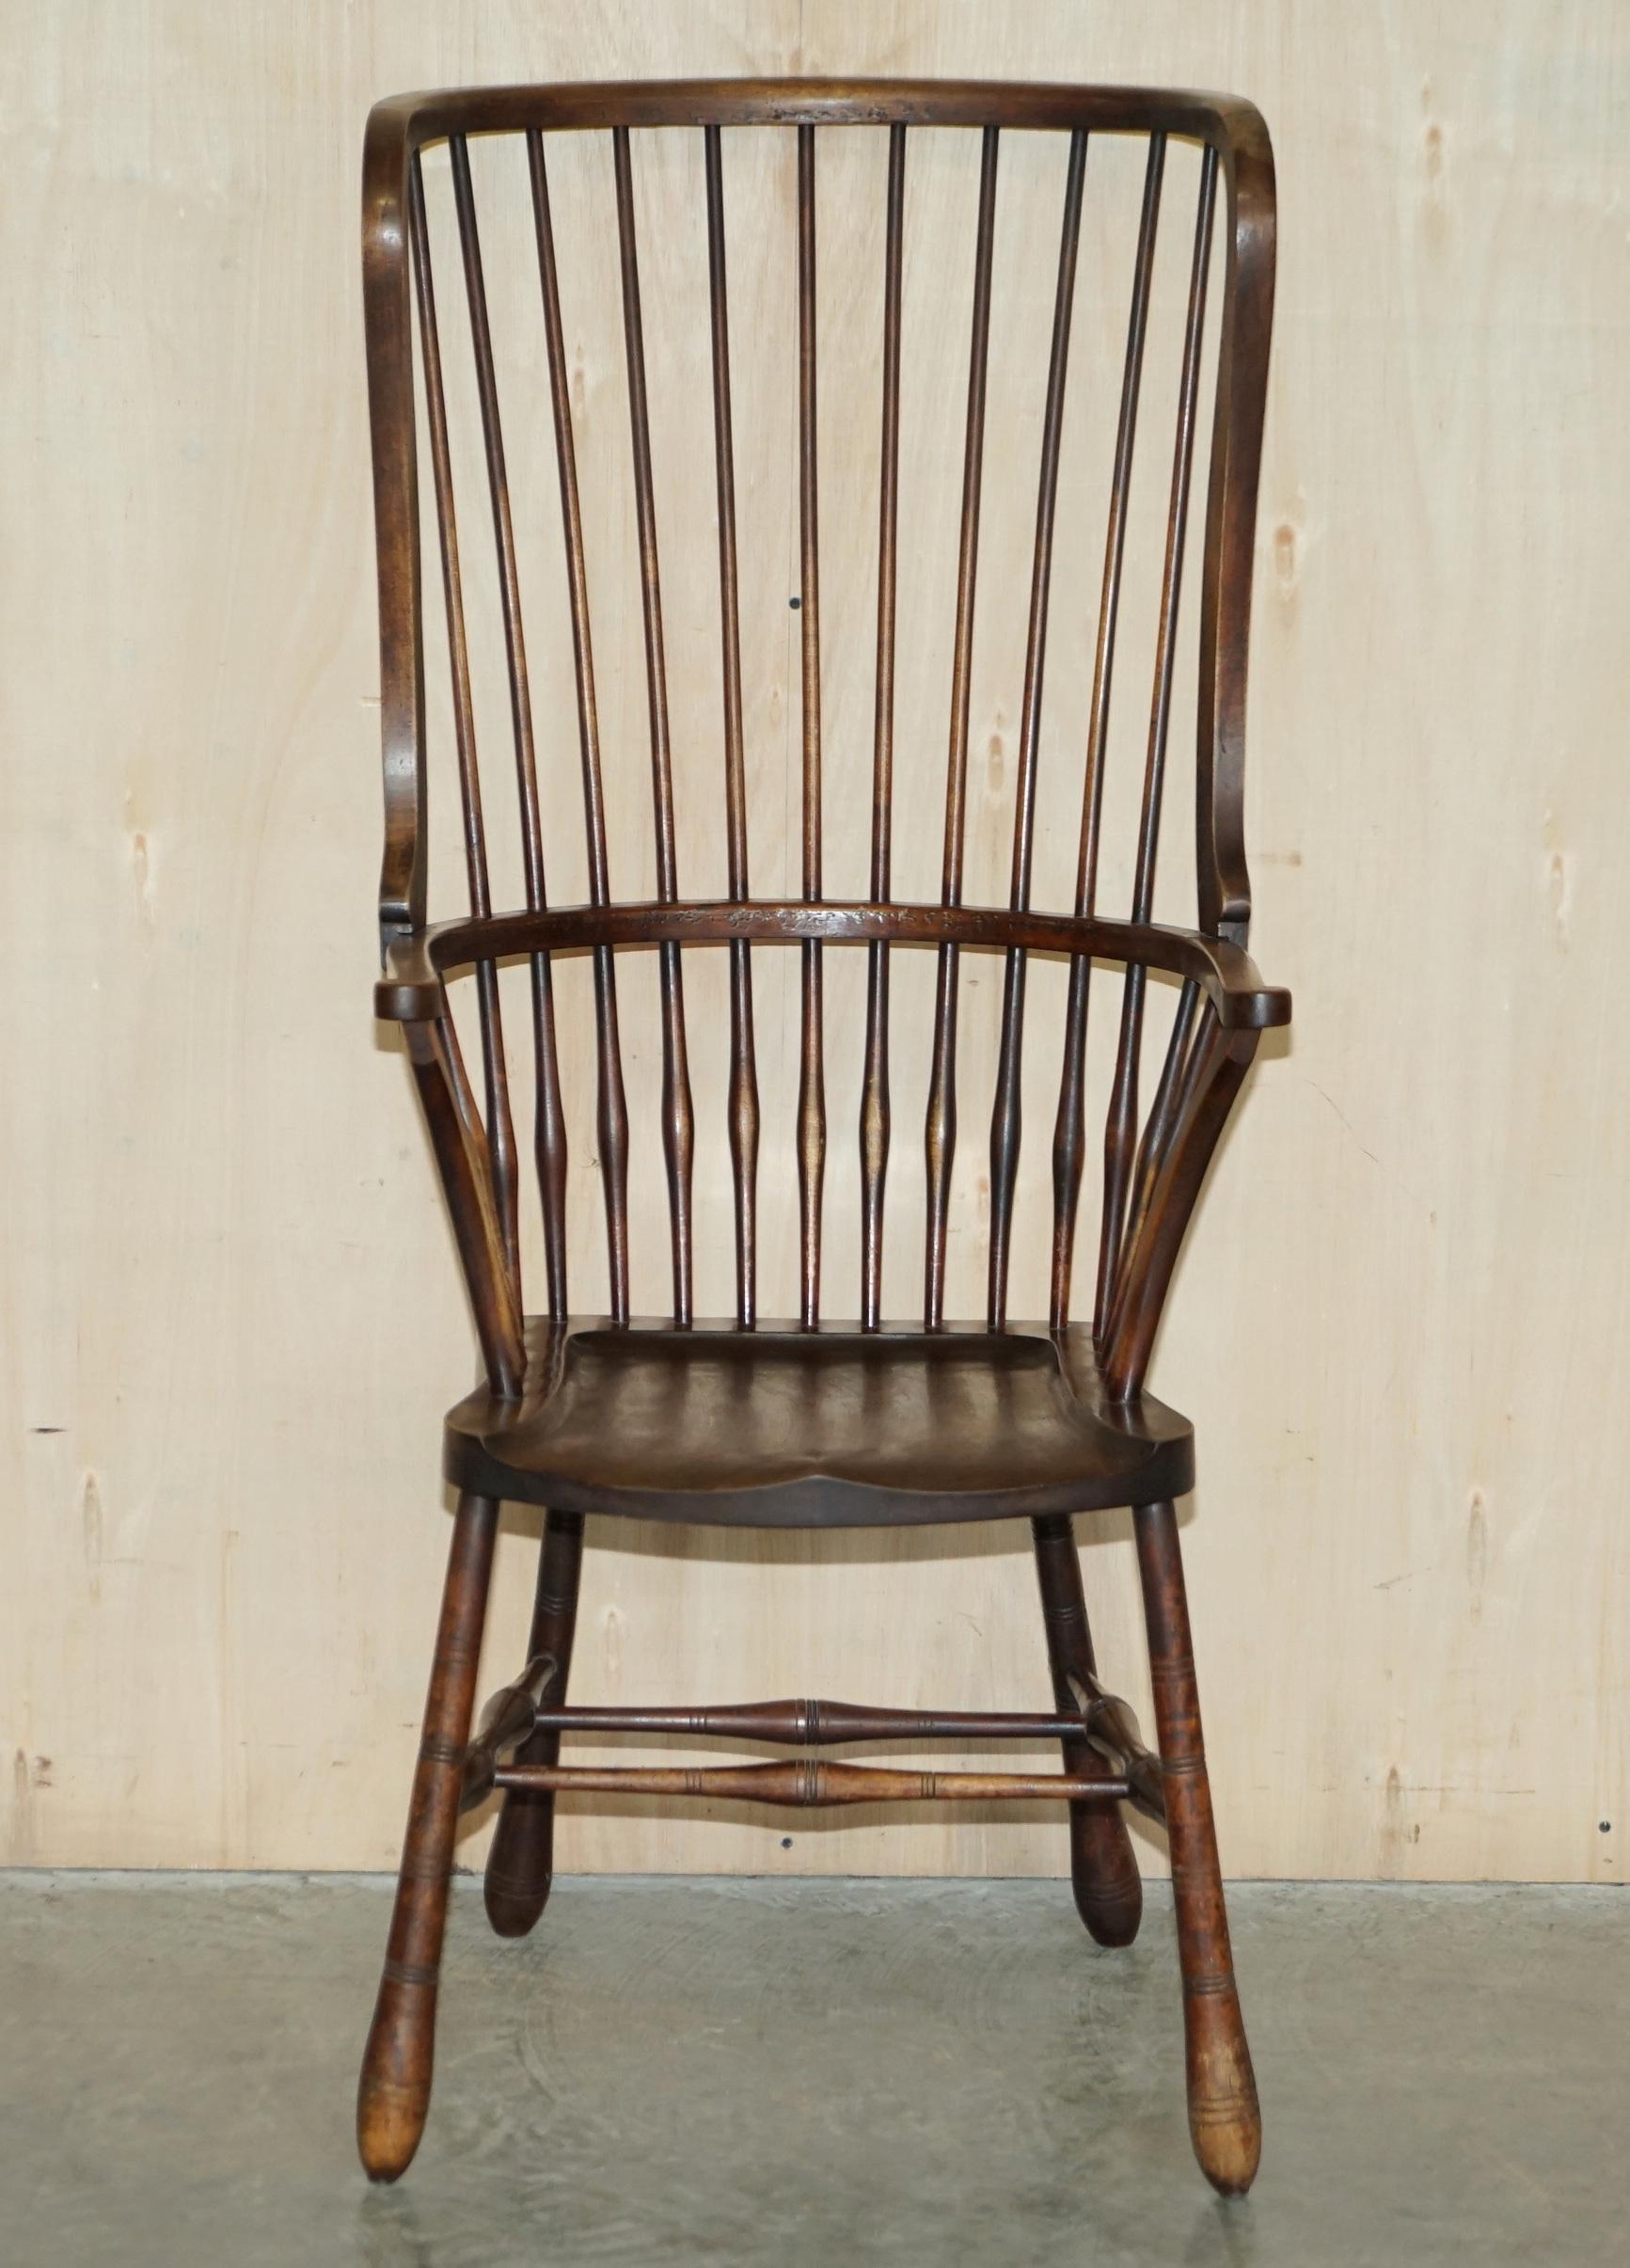 Nous sommes ravis d'offrir à la vente ce superbe fauteuil Windsor anglais du début du 19e siècle, de très grande taille, en frêne.

J'ai vu des milliers de fauteuils Windsor dans ma vie, celui-ci est le seul qui a été façonné comme un fauteuil à